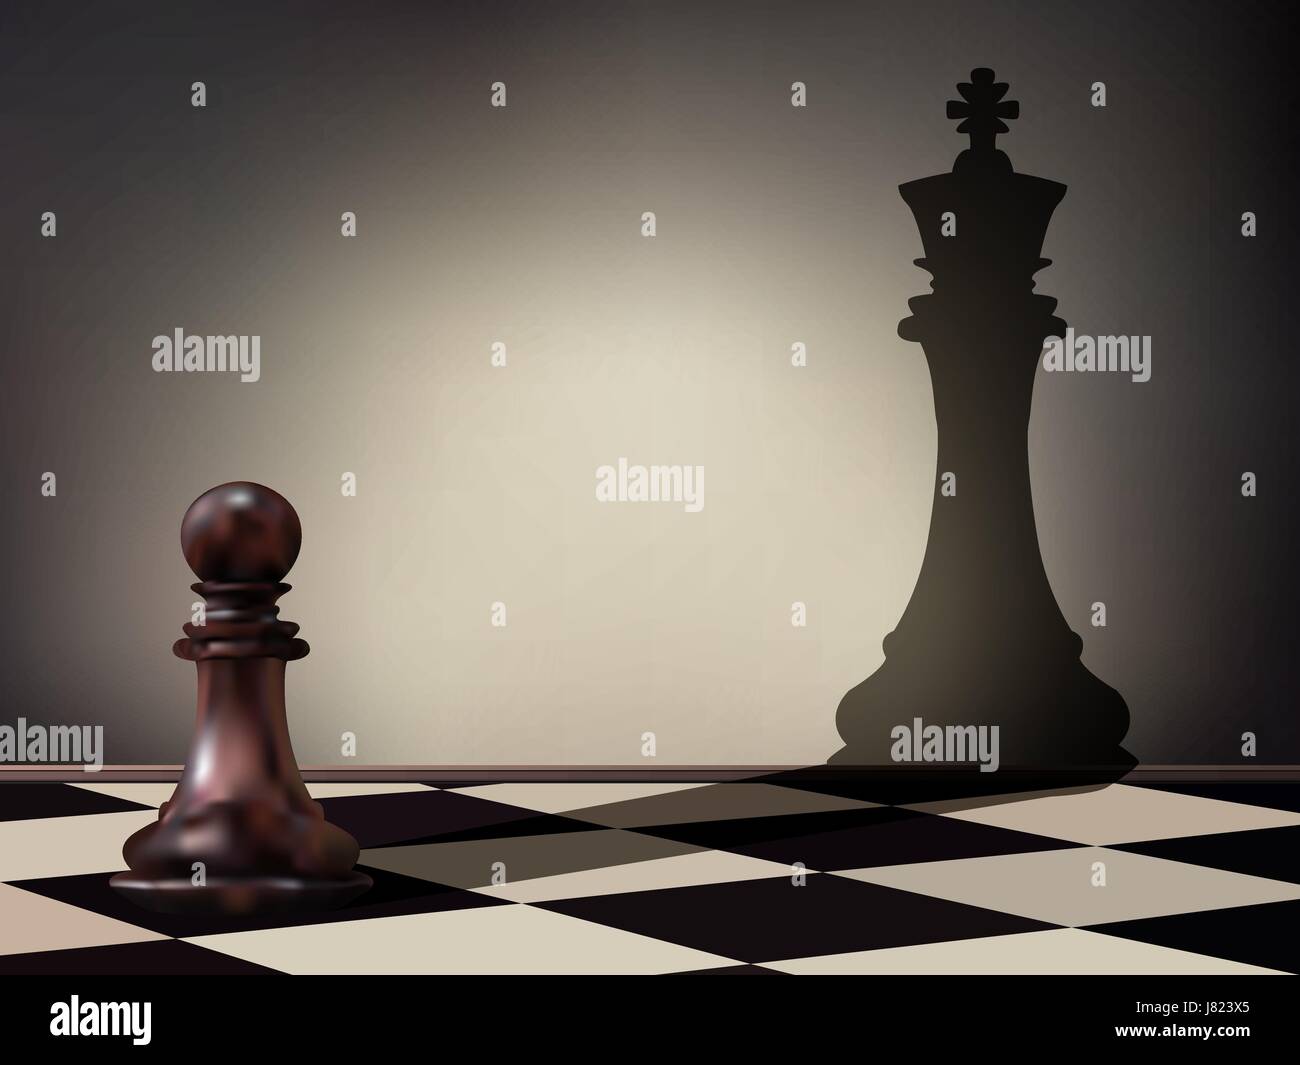 Illustrazione Vettoriale come una pedina pezzo degli scacchi colata di un re figura ombra sul muro. Le aspirazioni di business e il concetto di leadership. Magica transformatio Illustrazione Vettoriale